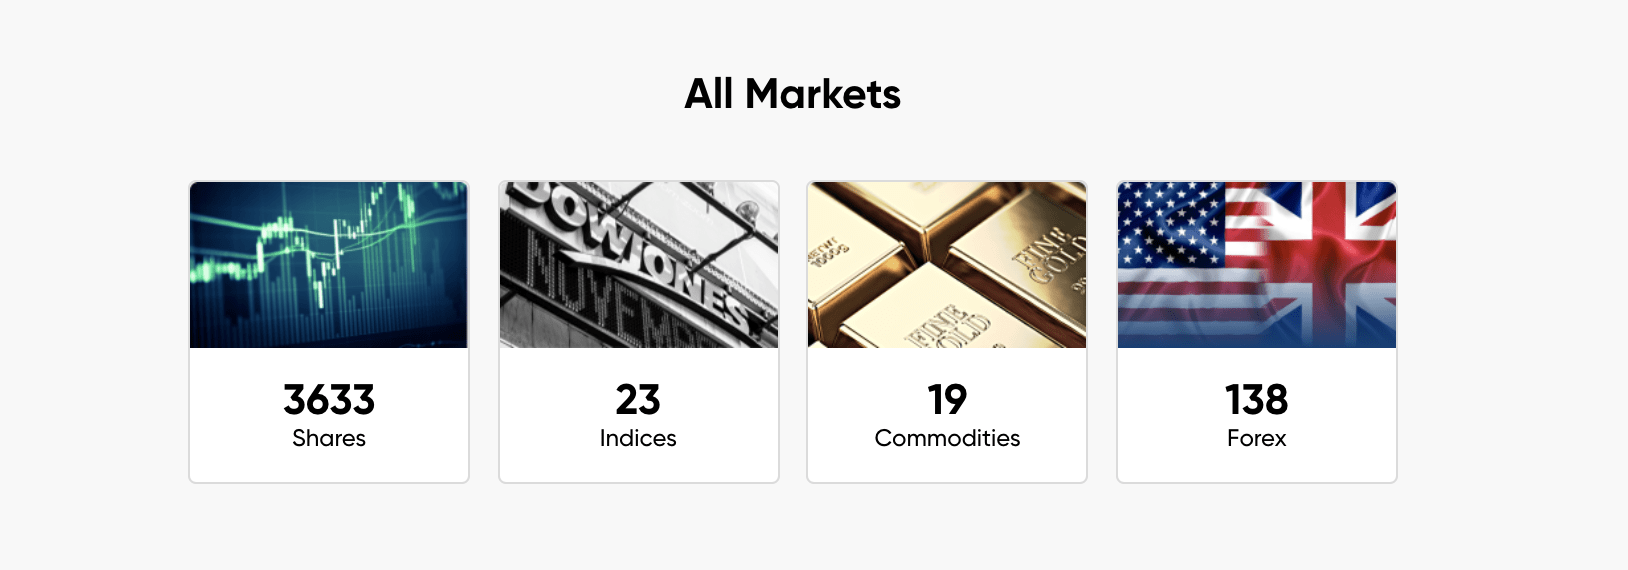 capital.com trade stocks